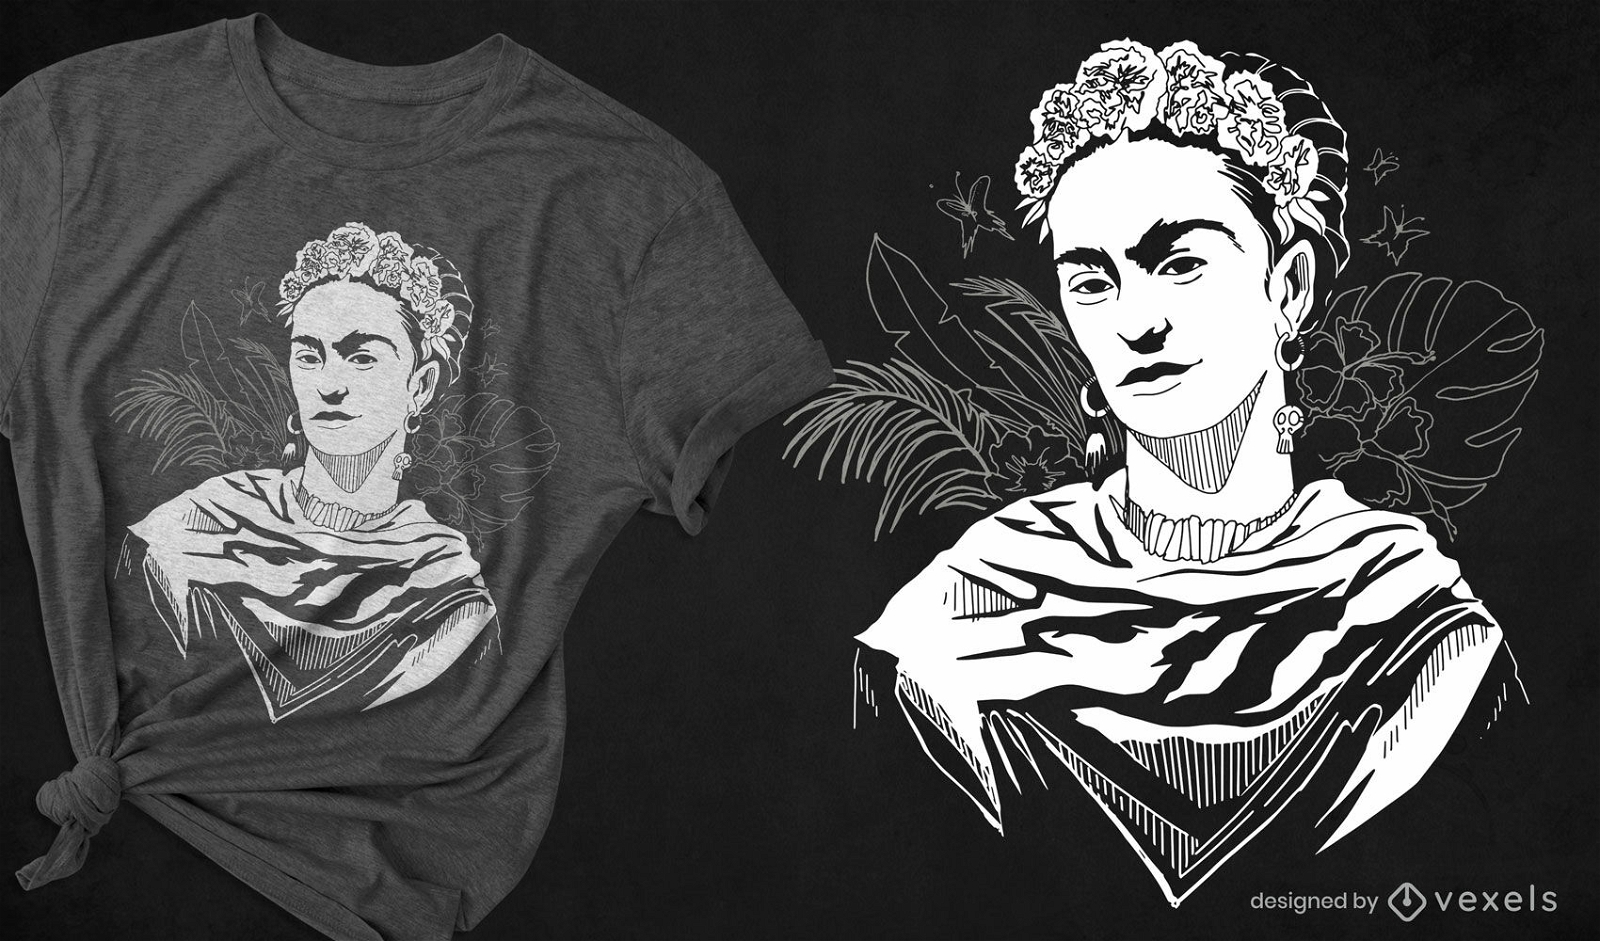 Black and white woman floral portrait t-shirt design